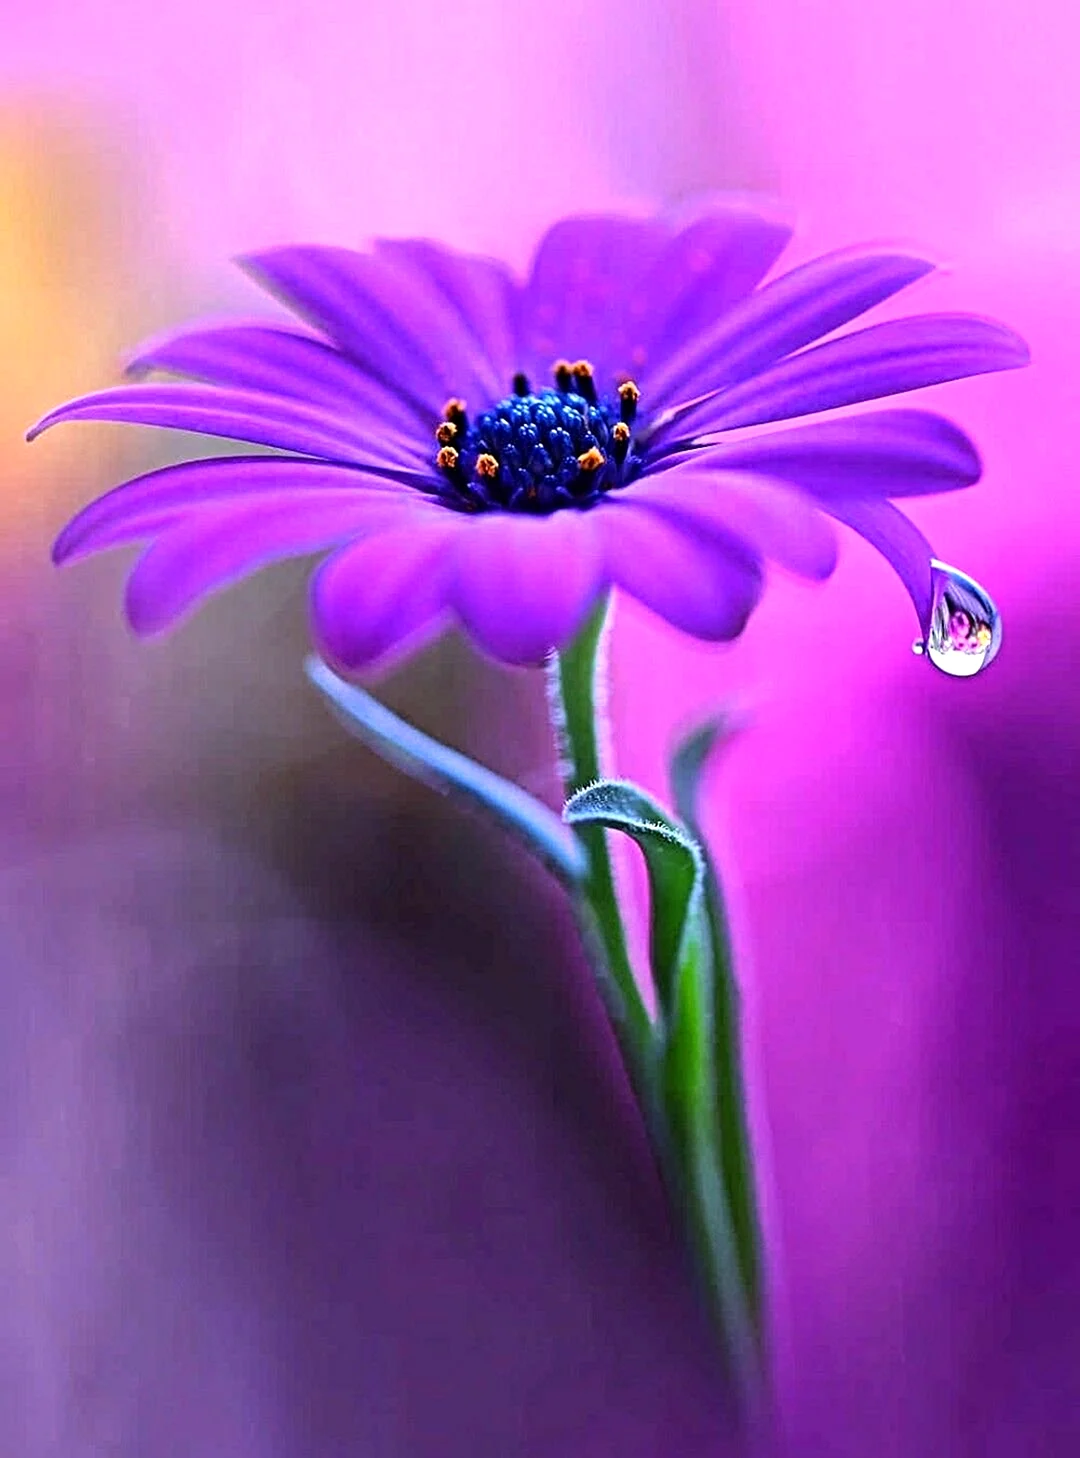 Яркие фиолетовые цветы